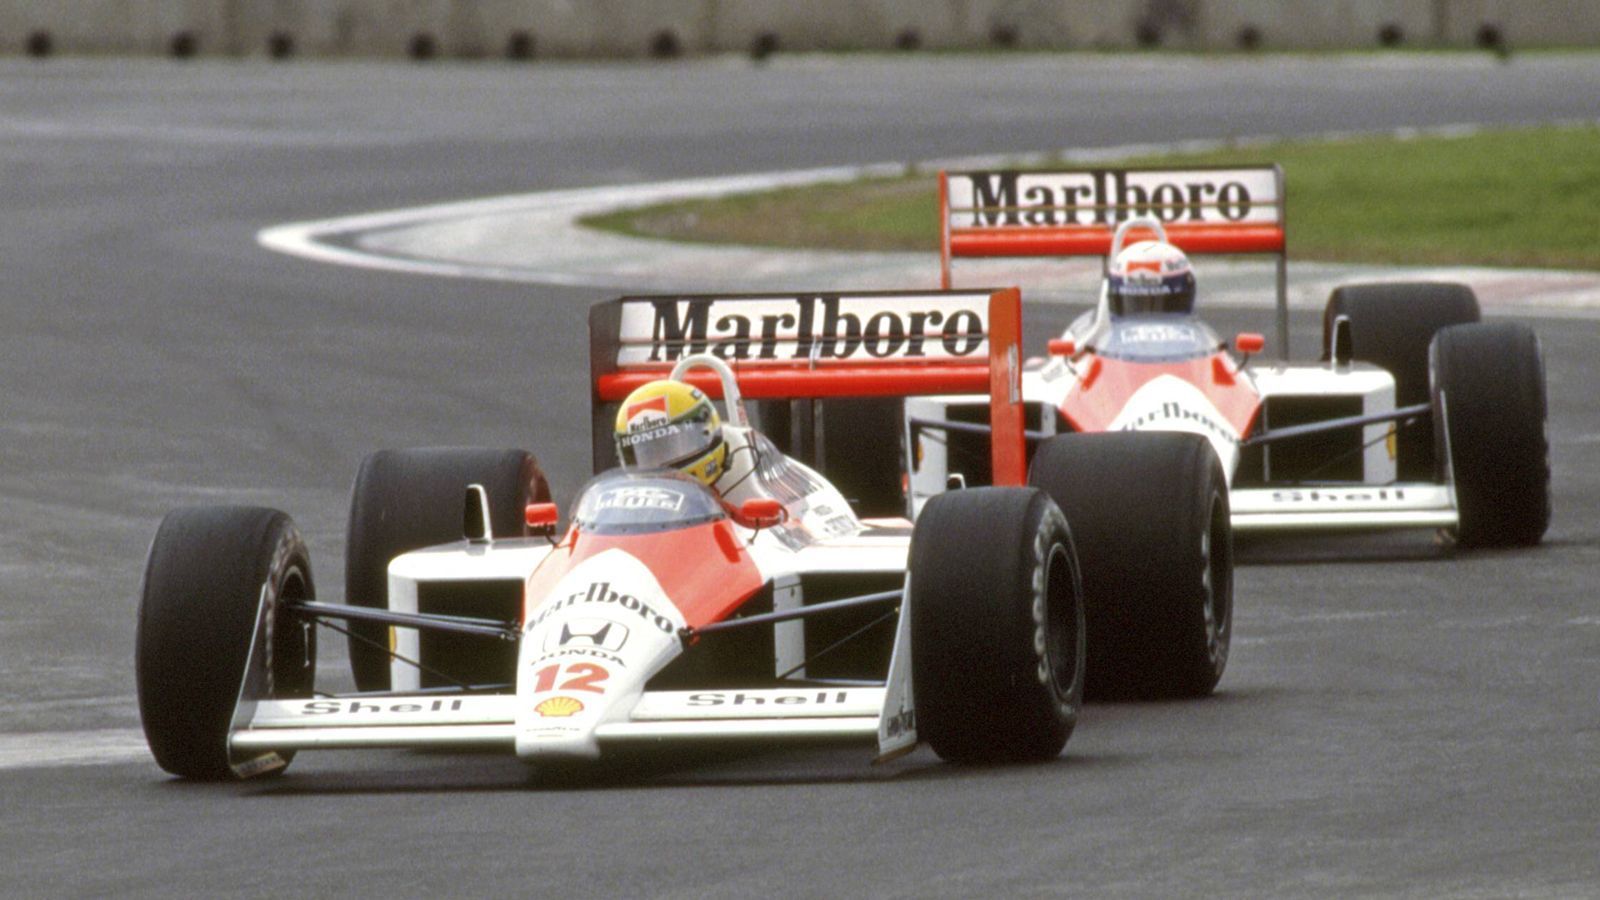 <strong>Ayrton Senna: Als die Formel 1 ihre Seele verlor</strong><br>
                Leberer: "Ayrton war ein intensiver, ein charismatischer Mensch. Er hielt sich für den besten Fahrer, wollte maximalen Erfolg. Manchen erschien er arrogant und unbelehrbar, auch weil er auf der Strecke, wenn es die Situation erforderte, riskante Manöver durchführte." Für diese ausgeprägte Risikobereitschaft hätten ihn aber viele bewundert. "Auch die Frauen", so Leberer.
